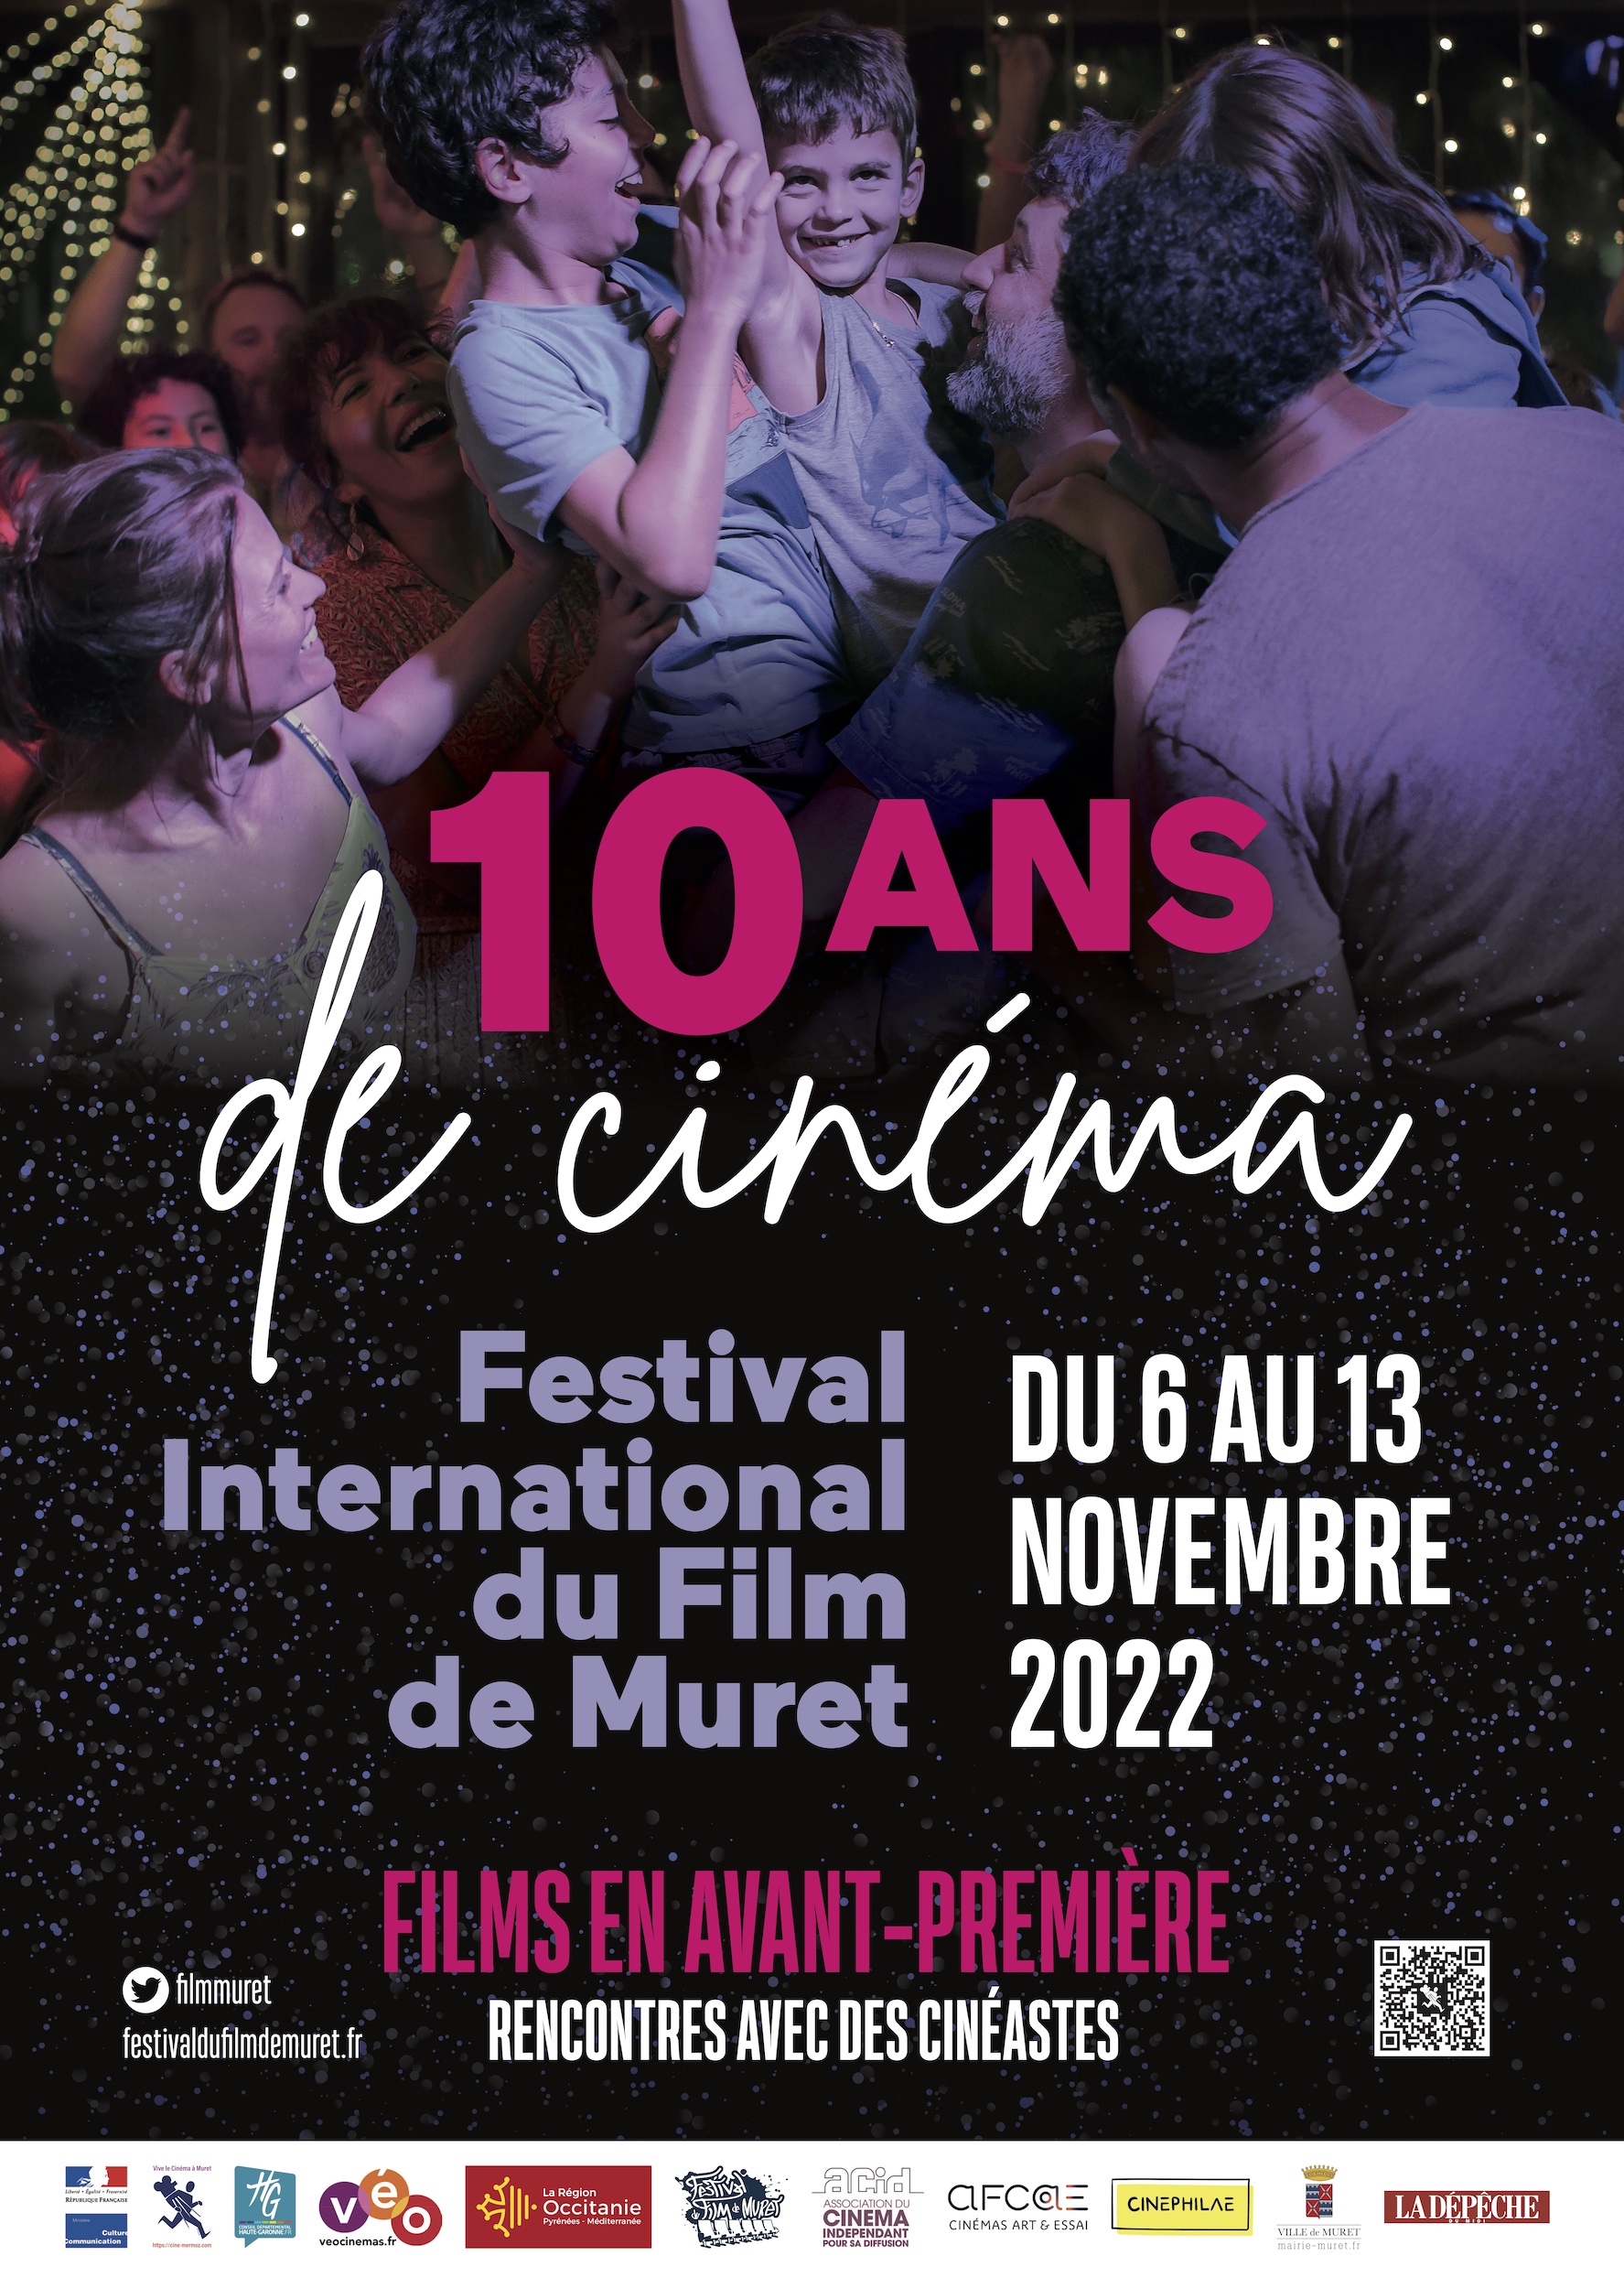 Festival International du Film de Muret 2022 - Du 6 au 13 novembre 2022 -  Région Occitanie / Pyrénées-Méditerranée